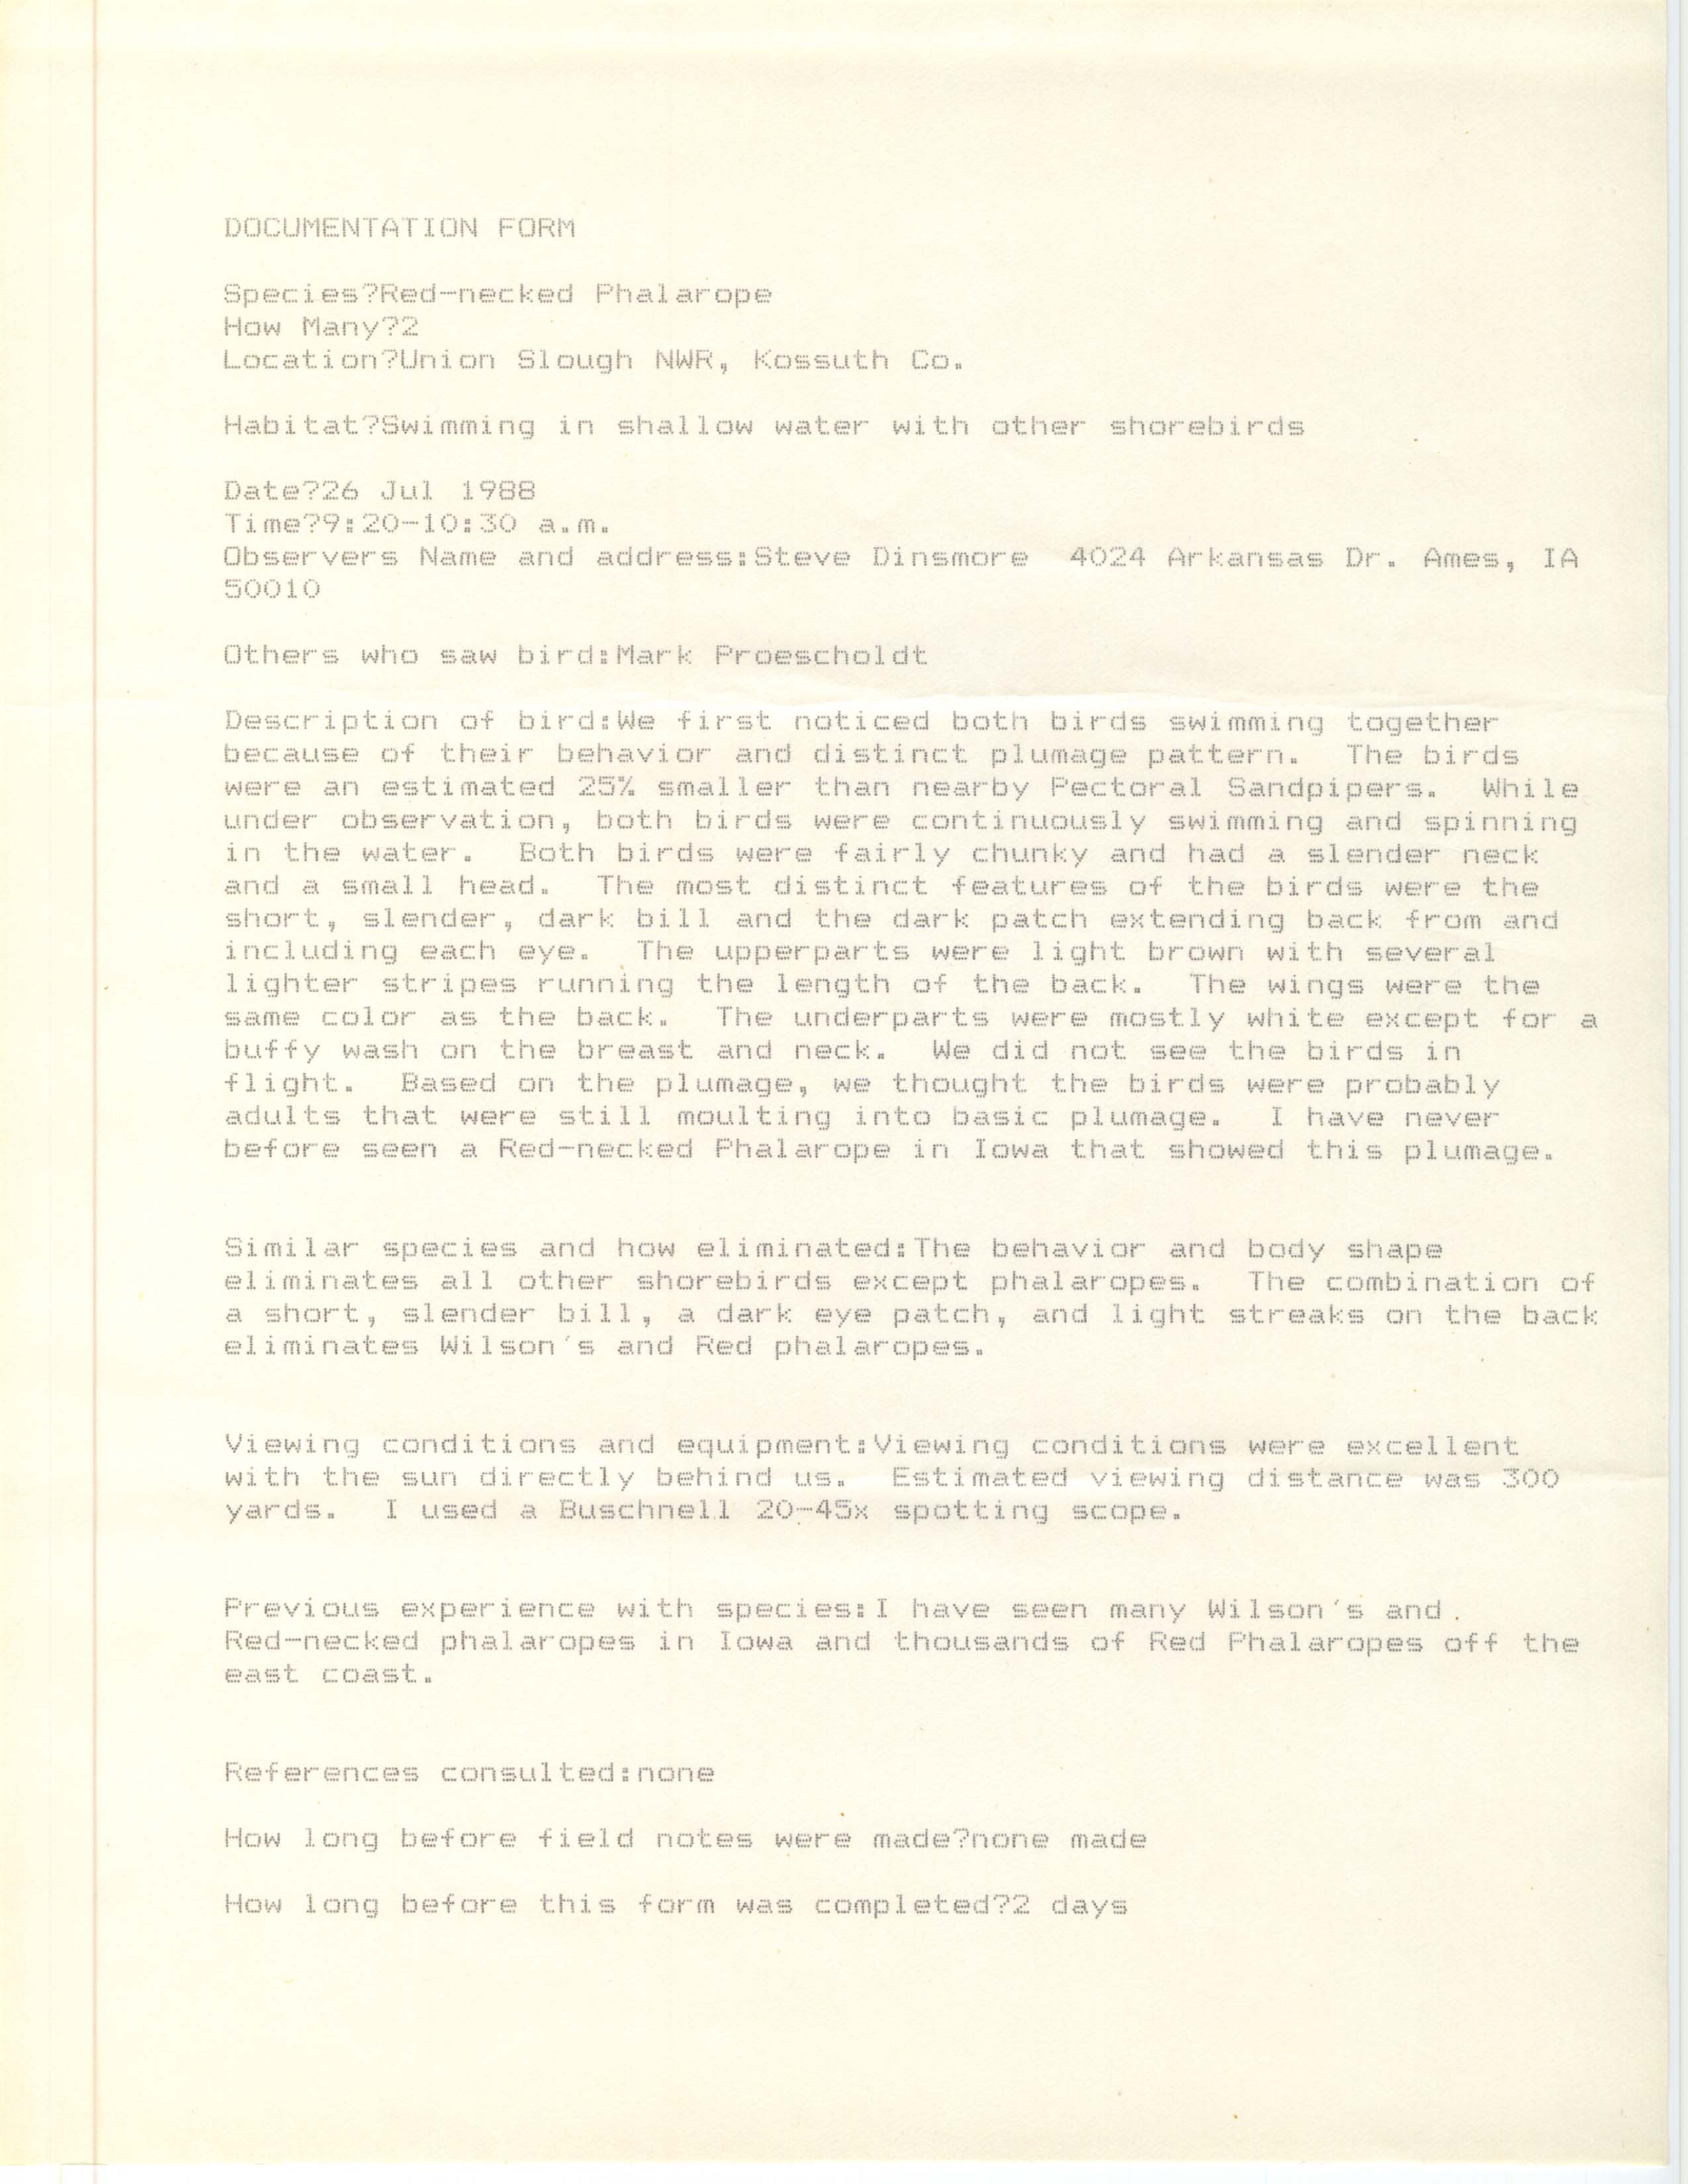 Rare bird documentation form for Red-necked Phalarope at Union Slough National Wildlife Refuge, 1988